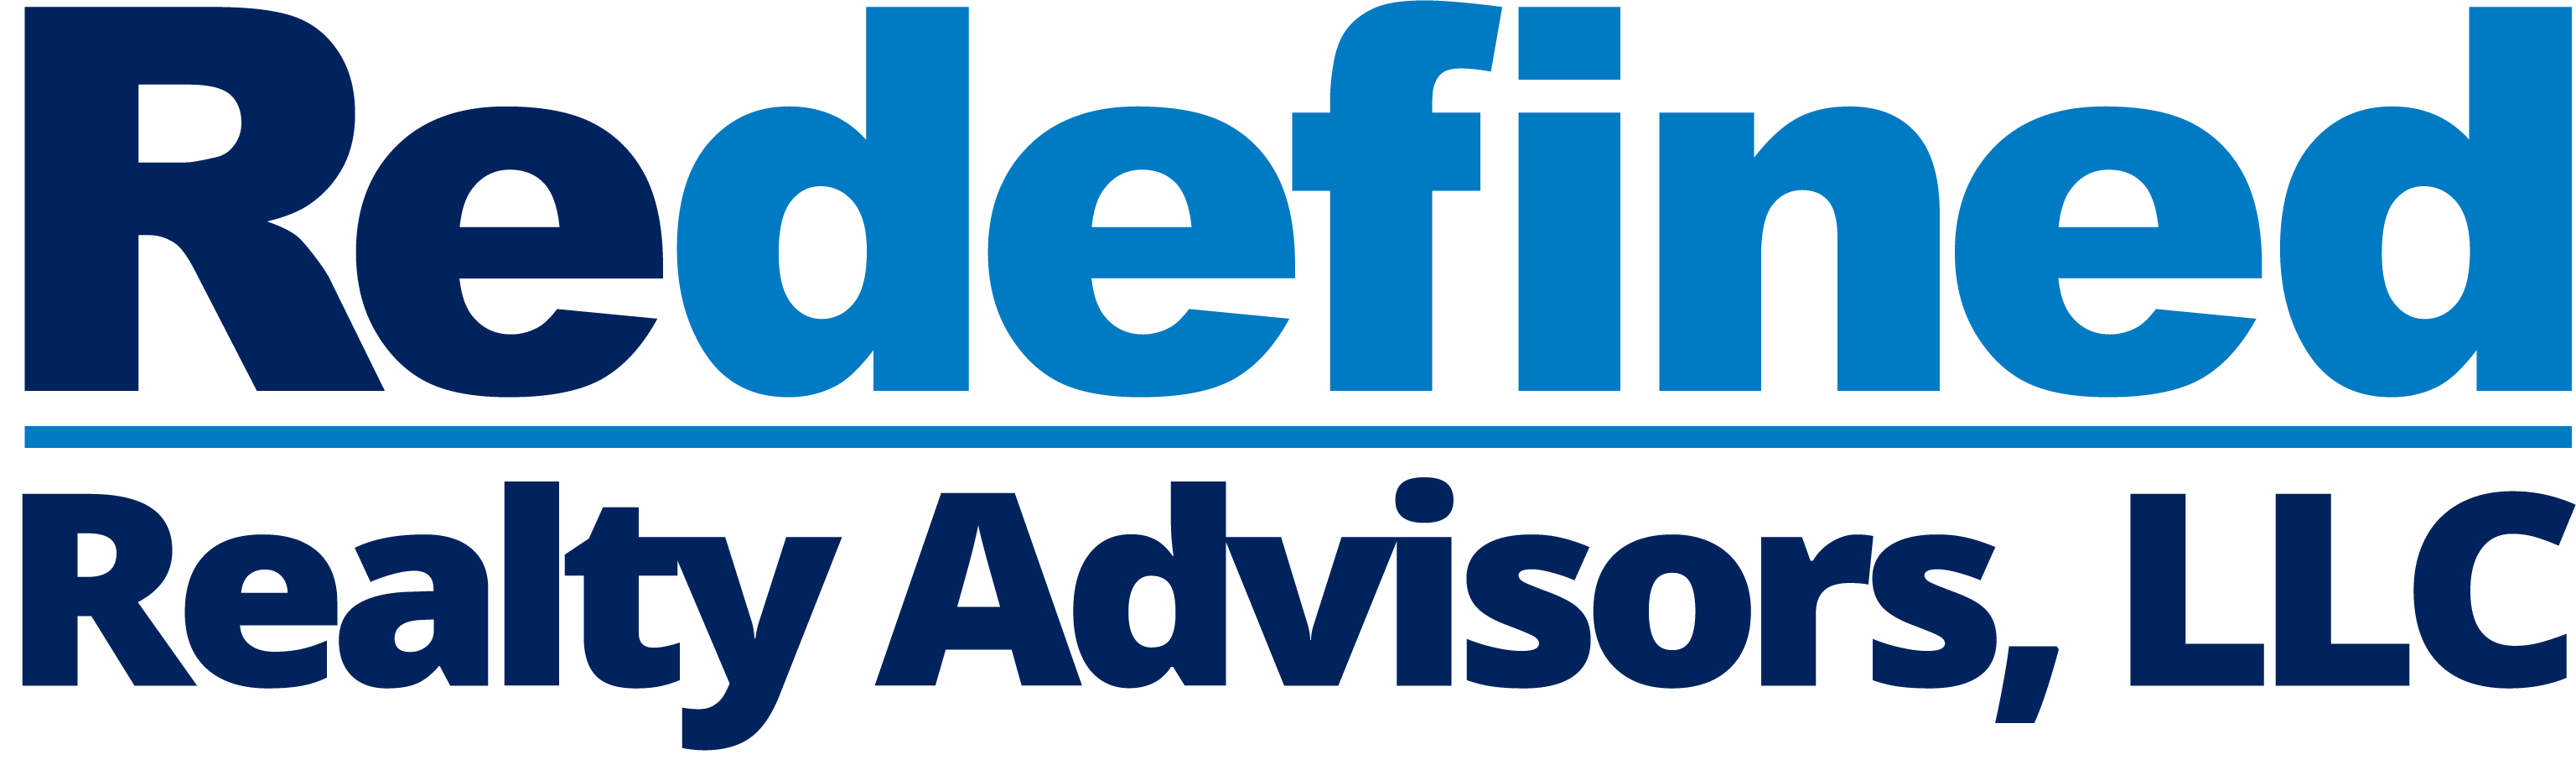 Redefined Realty Advisors Logo